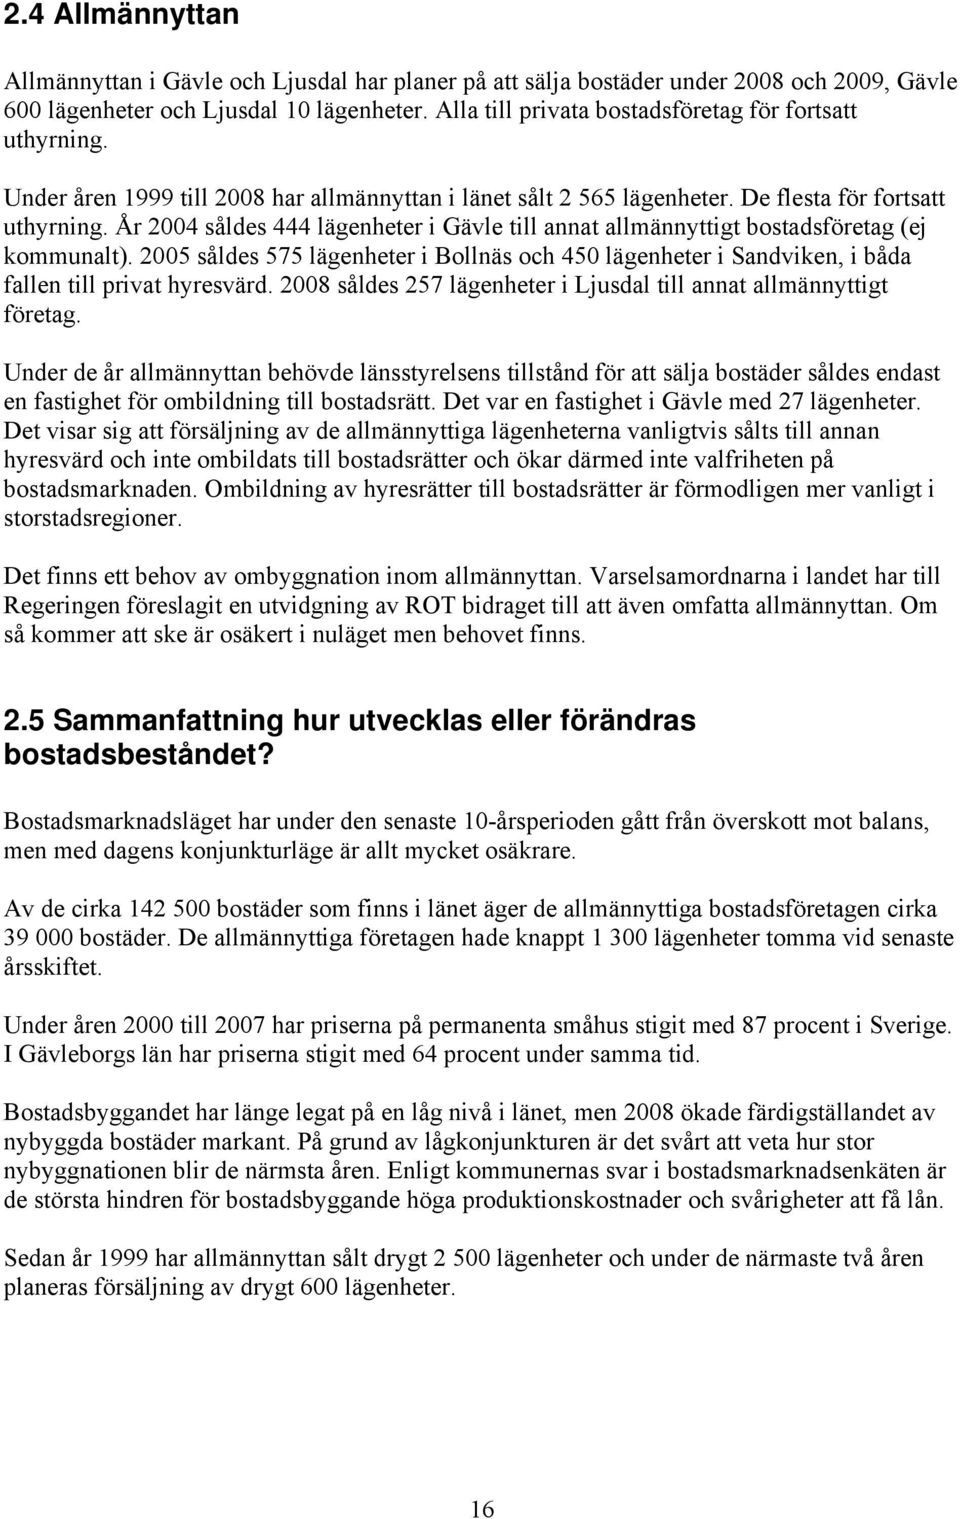 År 2004 såldes 444 lägenheter i Gävle till annat allmännyttigt bostadsföretag (ej kommunalt). 2005 såldes 575 lägenheter i Bollnäs och 450 lägenheter i Sandviken, i båda fallen till privat hyresvärd.